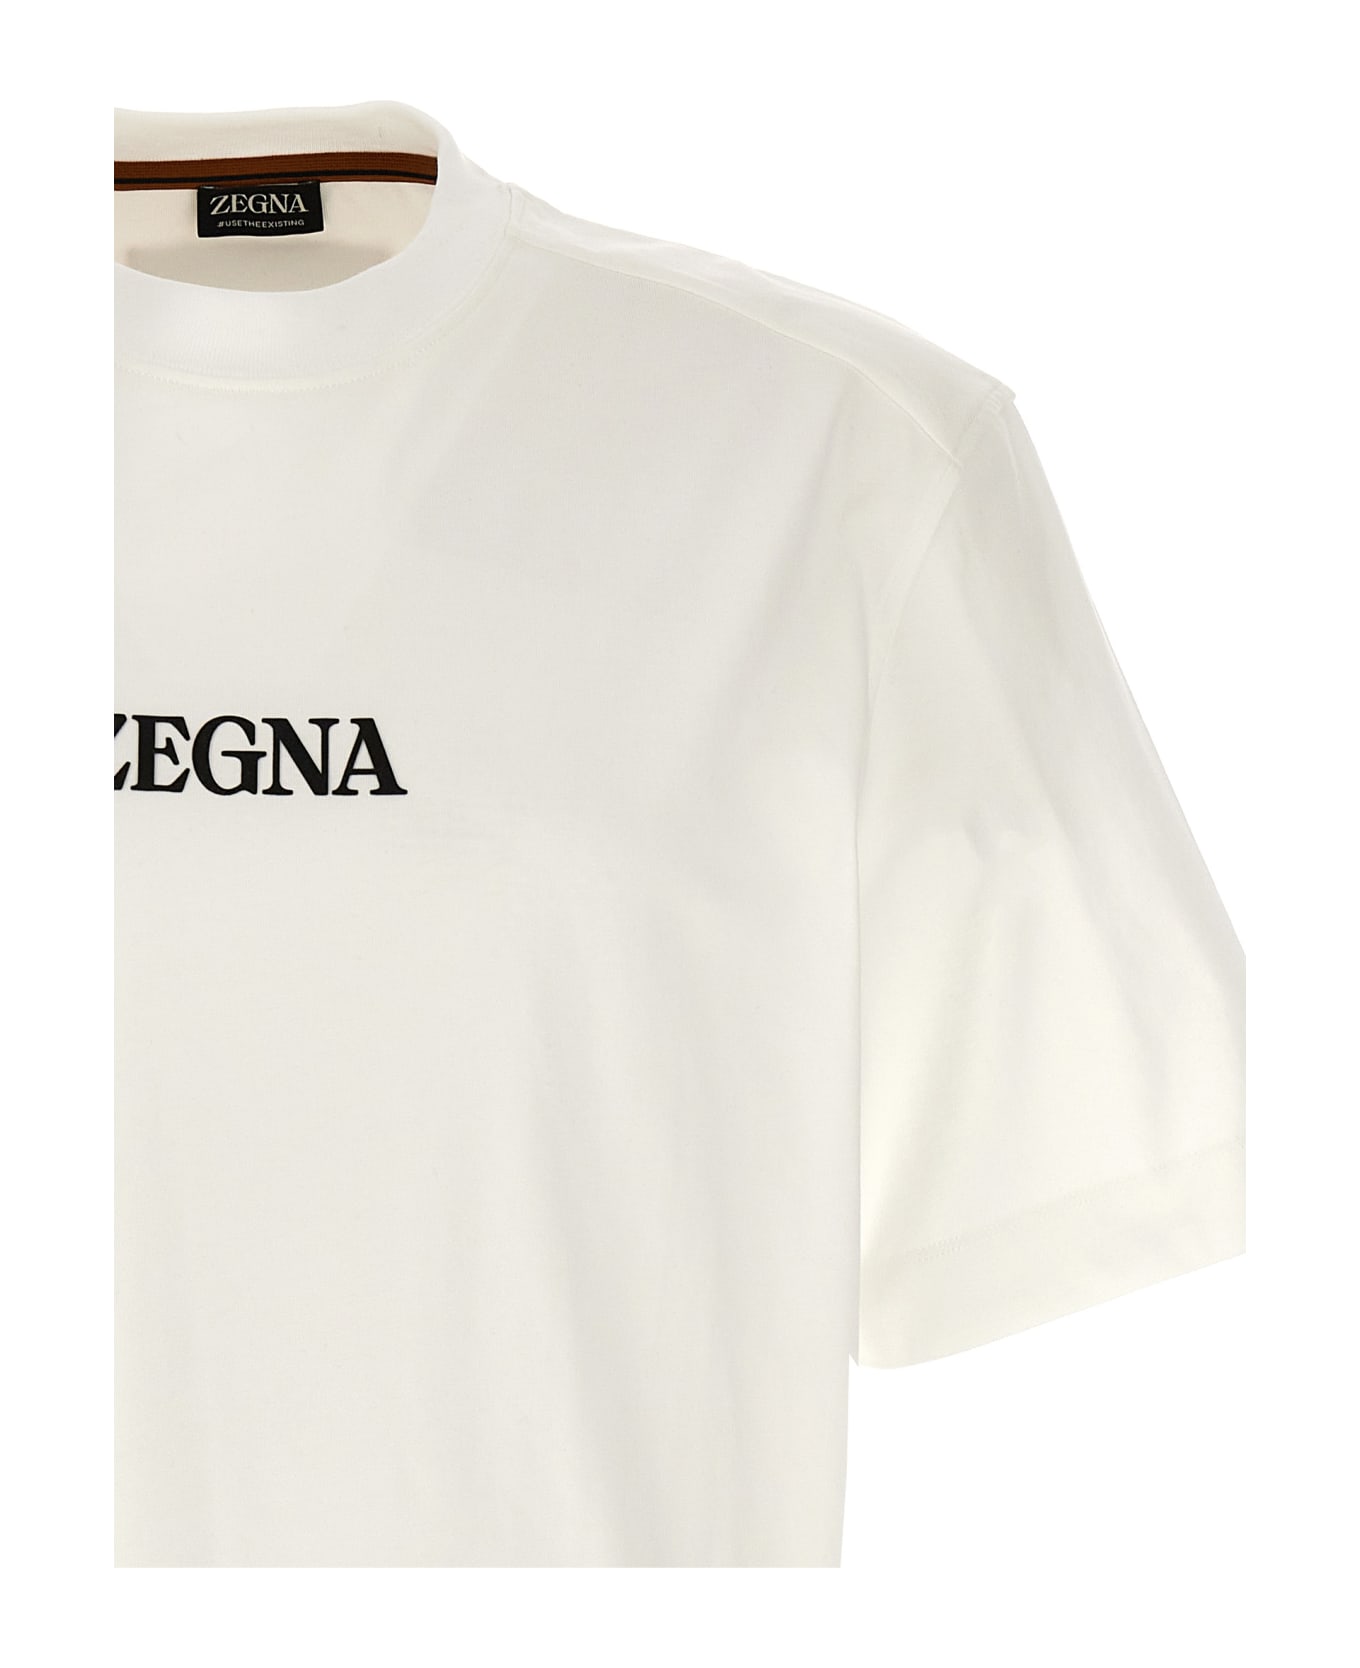 Zegna Logo T-shirt - White シャツ